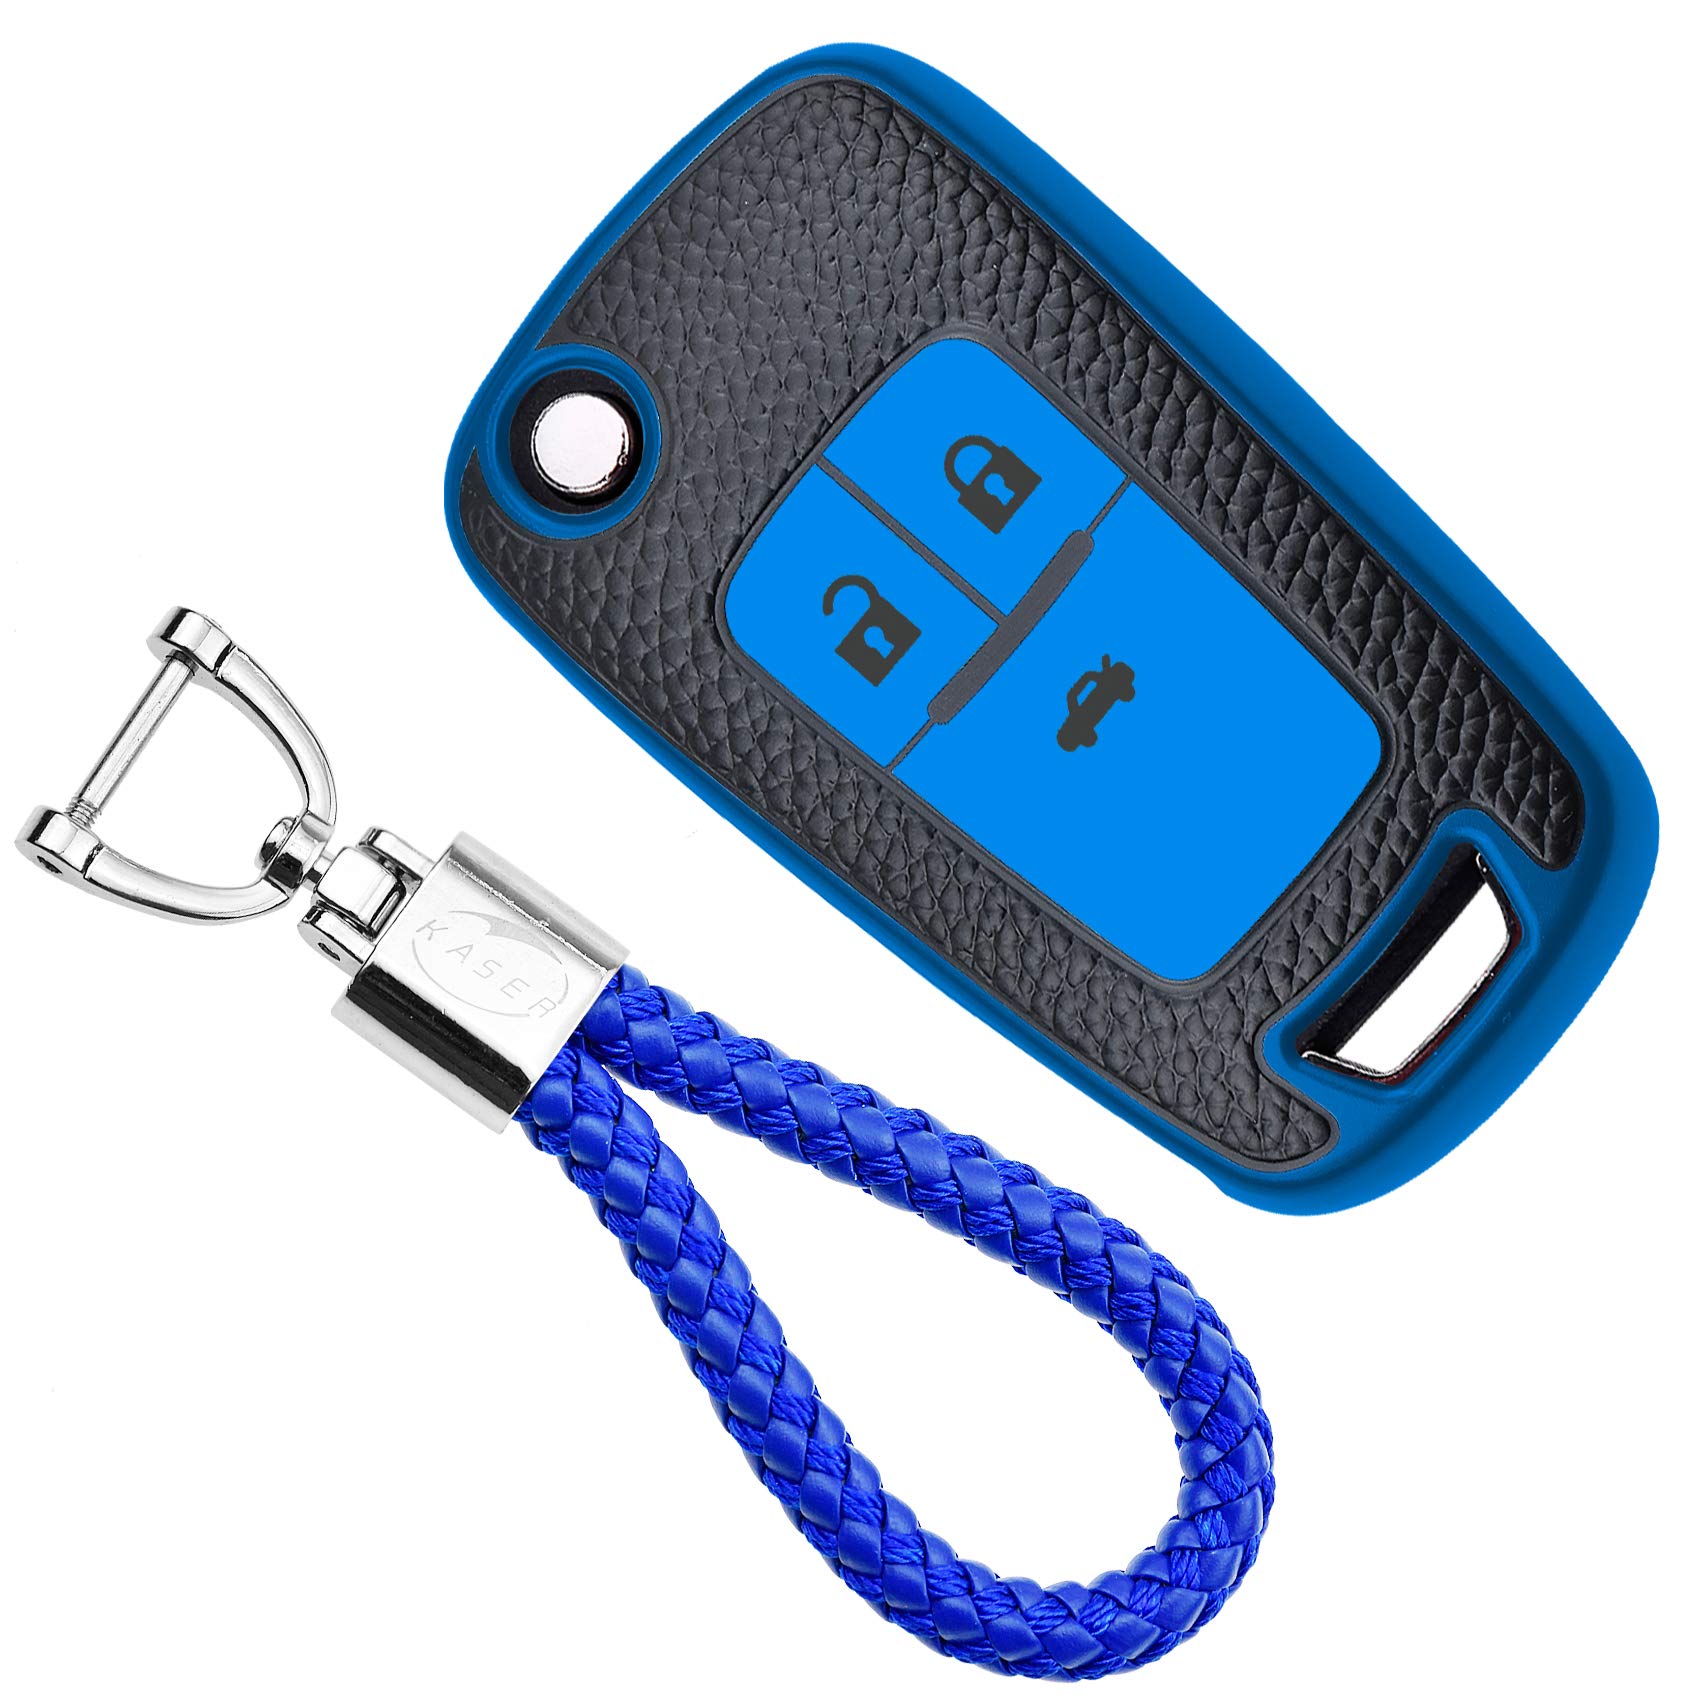 KASER Autoschlüssel Hülle kompatibel für Chevrolet Opel Mokka Astra Corsa Cruze Aveo Zafira Schlüsselanhänger Abdeckung Silikon Schutzhülle Ledereffekt (Blau) von Kaser